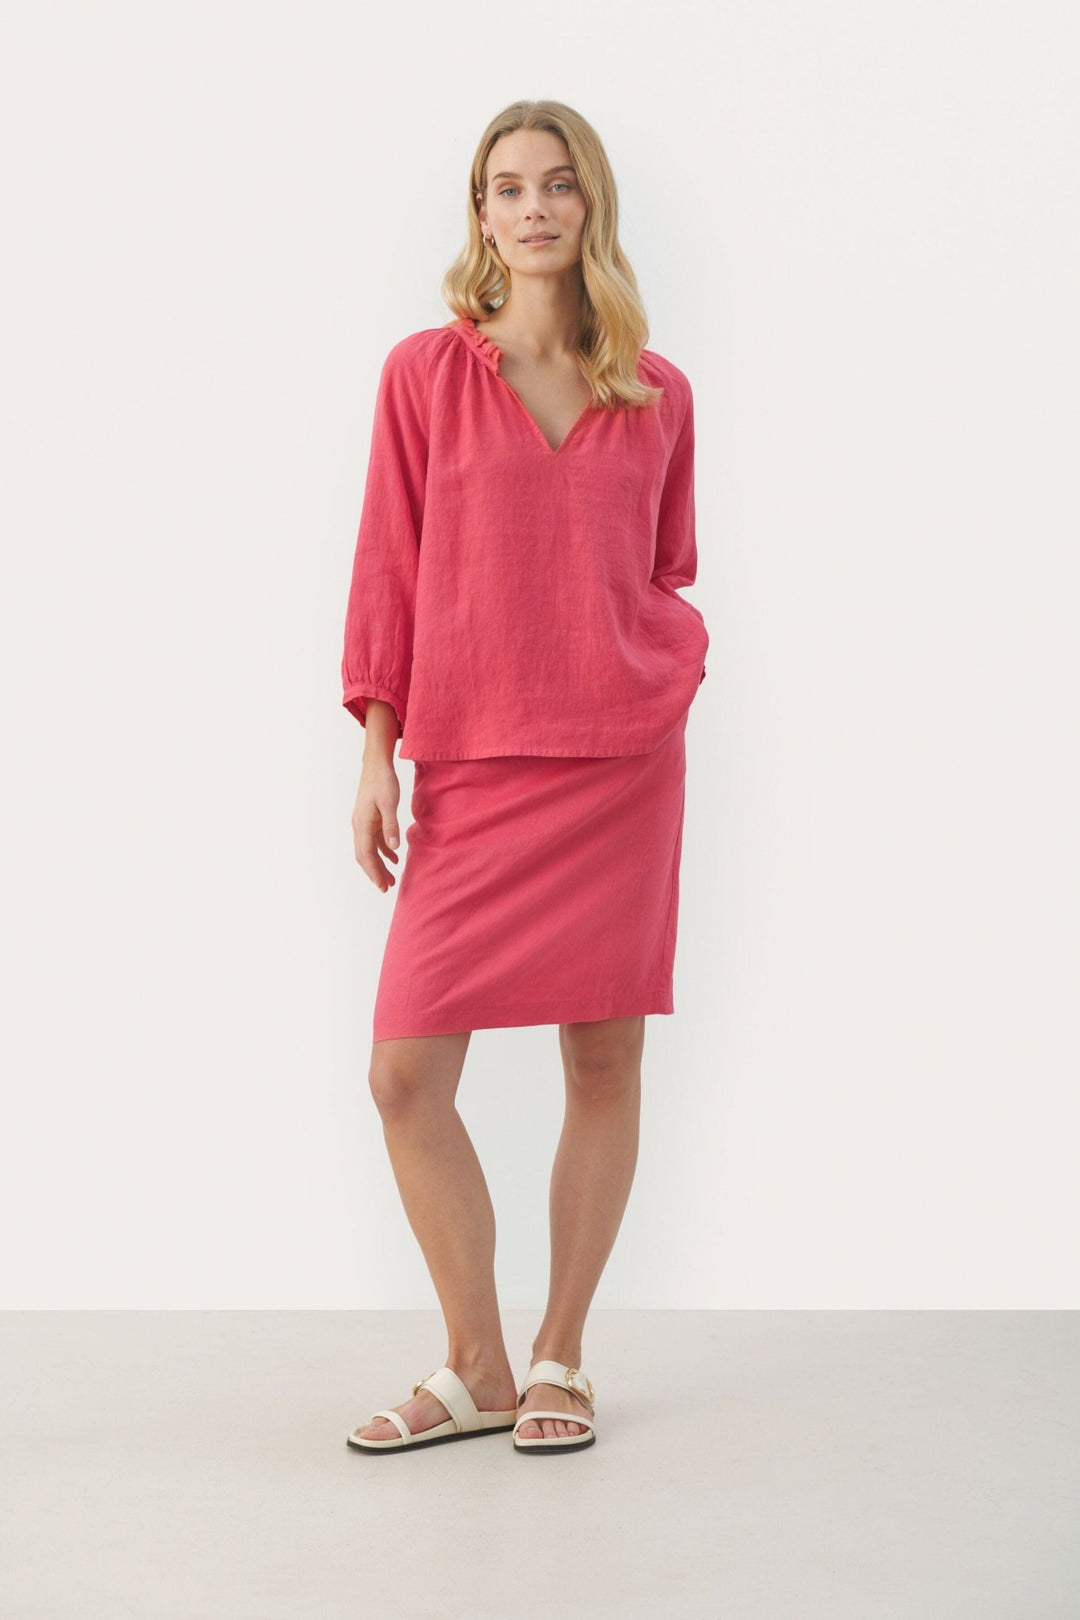 Elodypw Blouse Claret Red | Skjorter og bluser | Smuk - Dameklær på nett